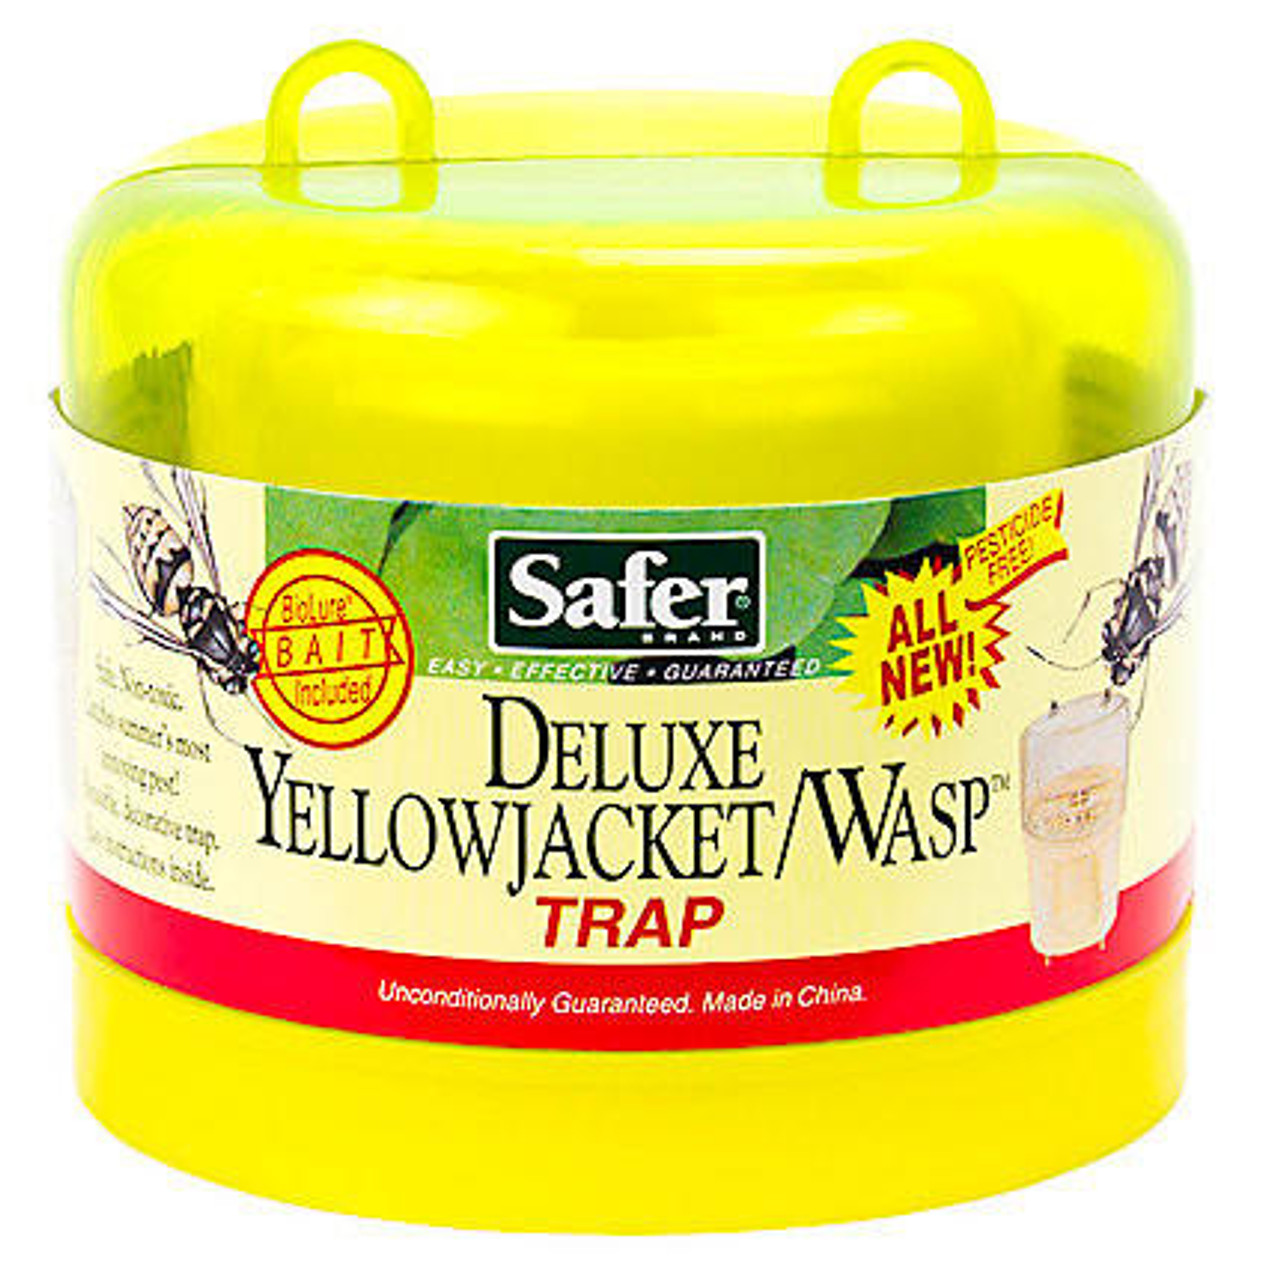 yellow jacket trap